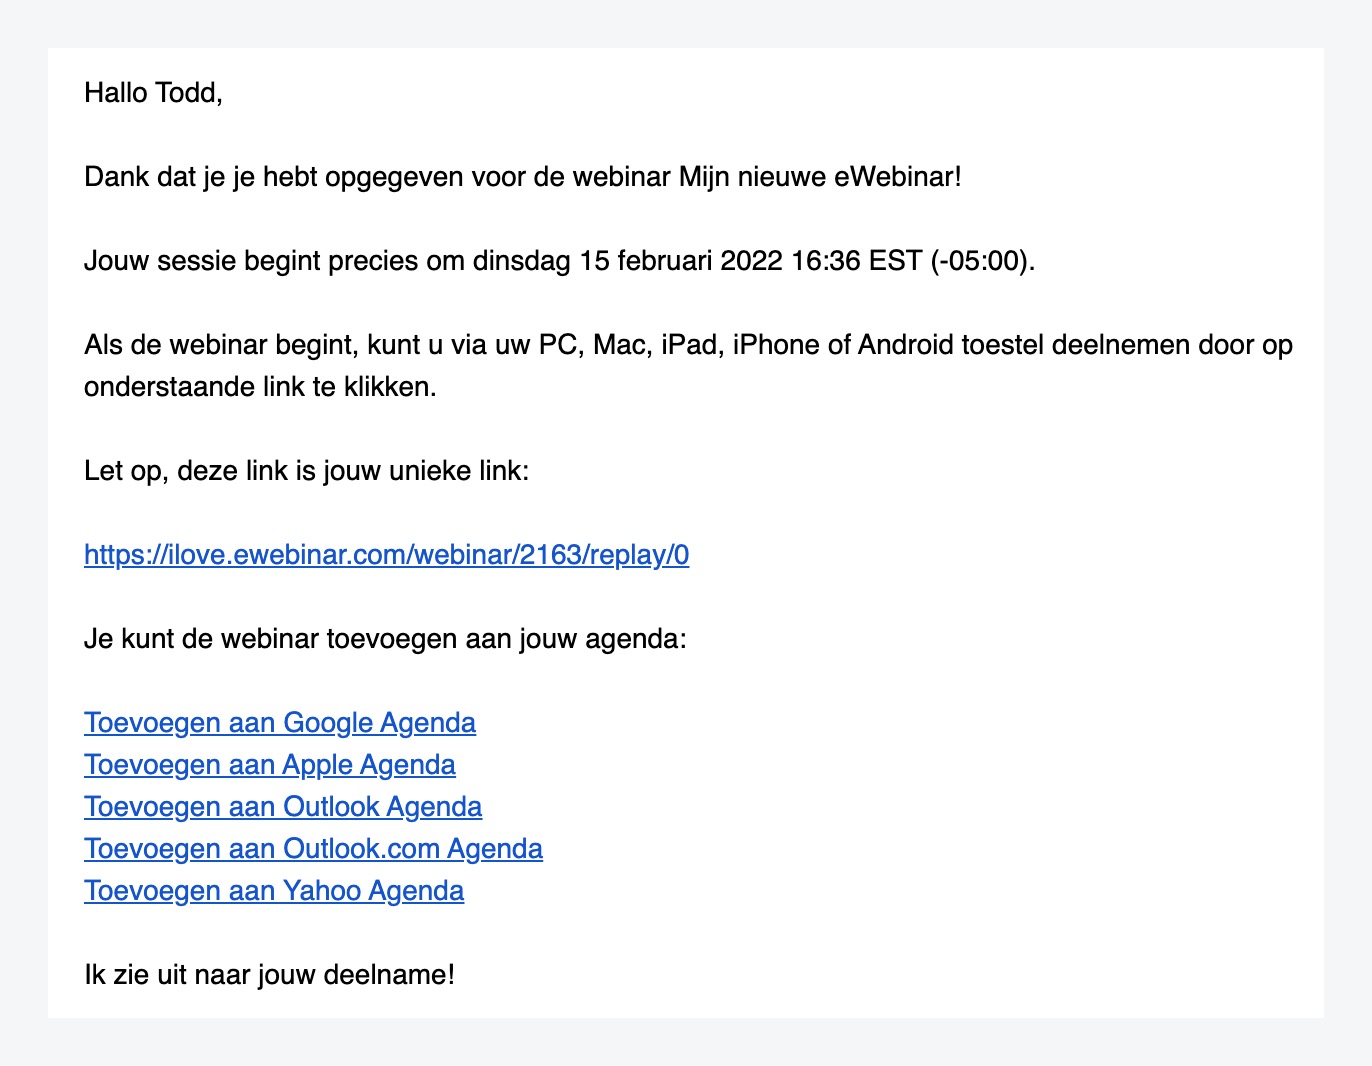 Correo electrónico de confirmación en la plantilla estándar de eWebinar en holandés